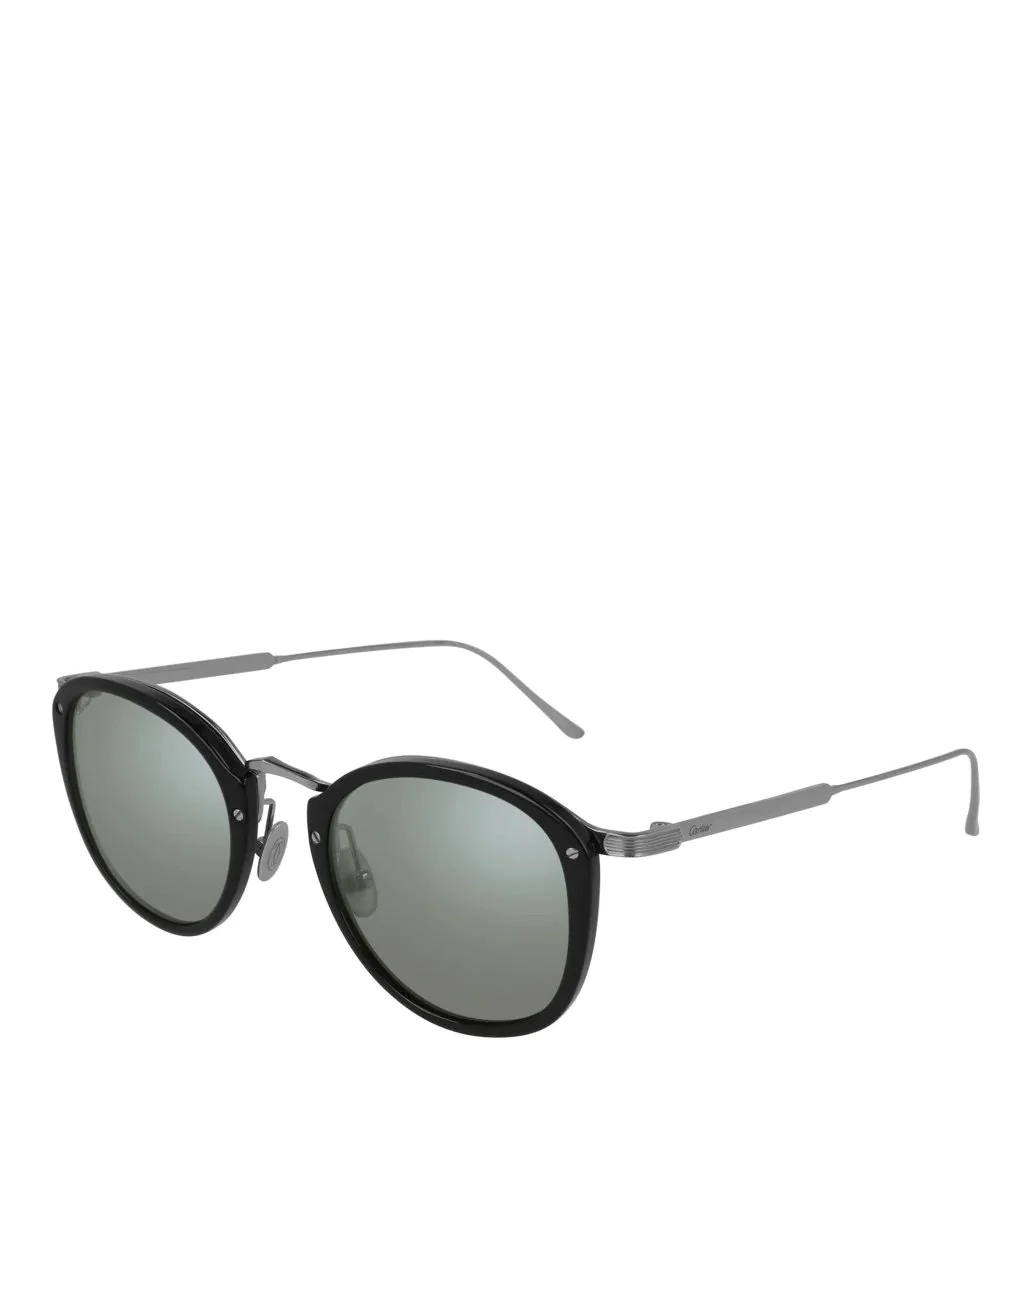 Cartier Ct0014s C Décor Sunglasses